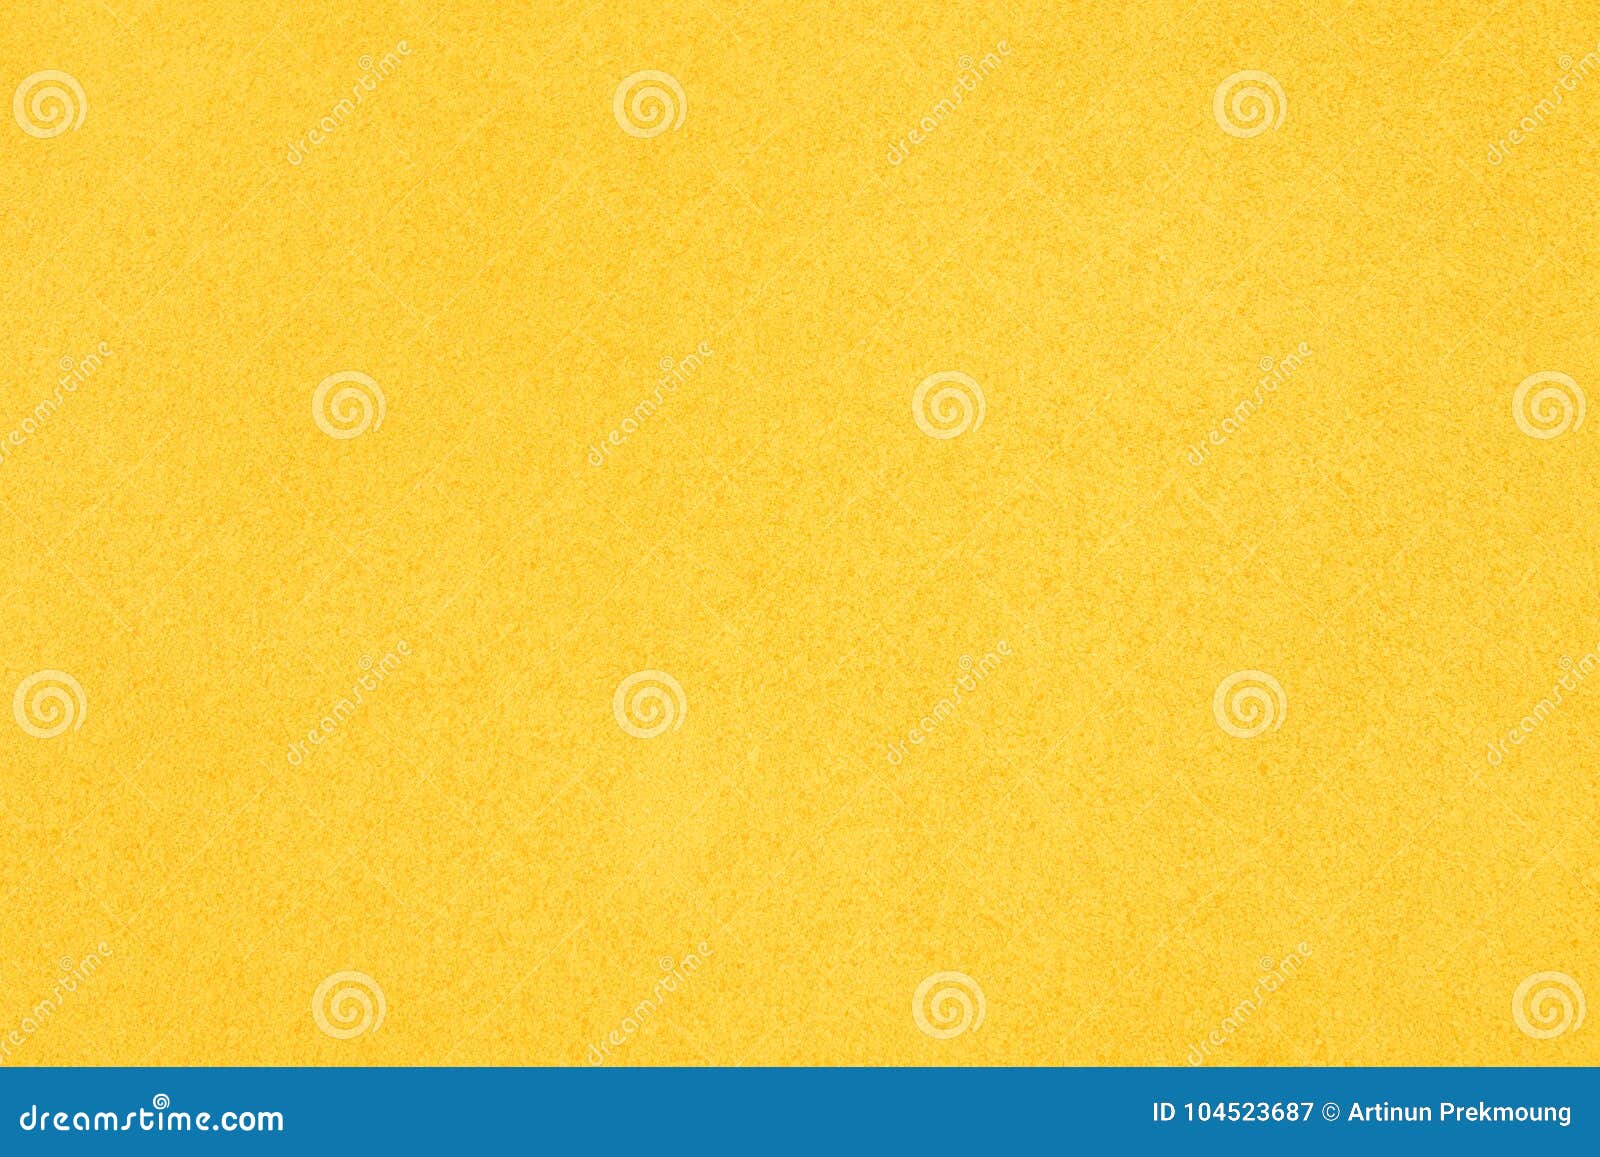 Yellow paper texture with copy space, Free Photo #Freepik #freephoto  #freebackground #freeabstract-b…